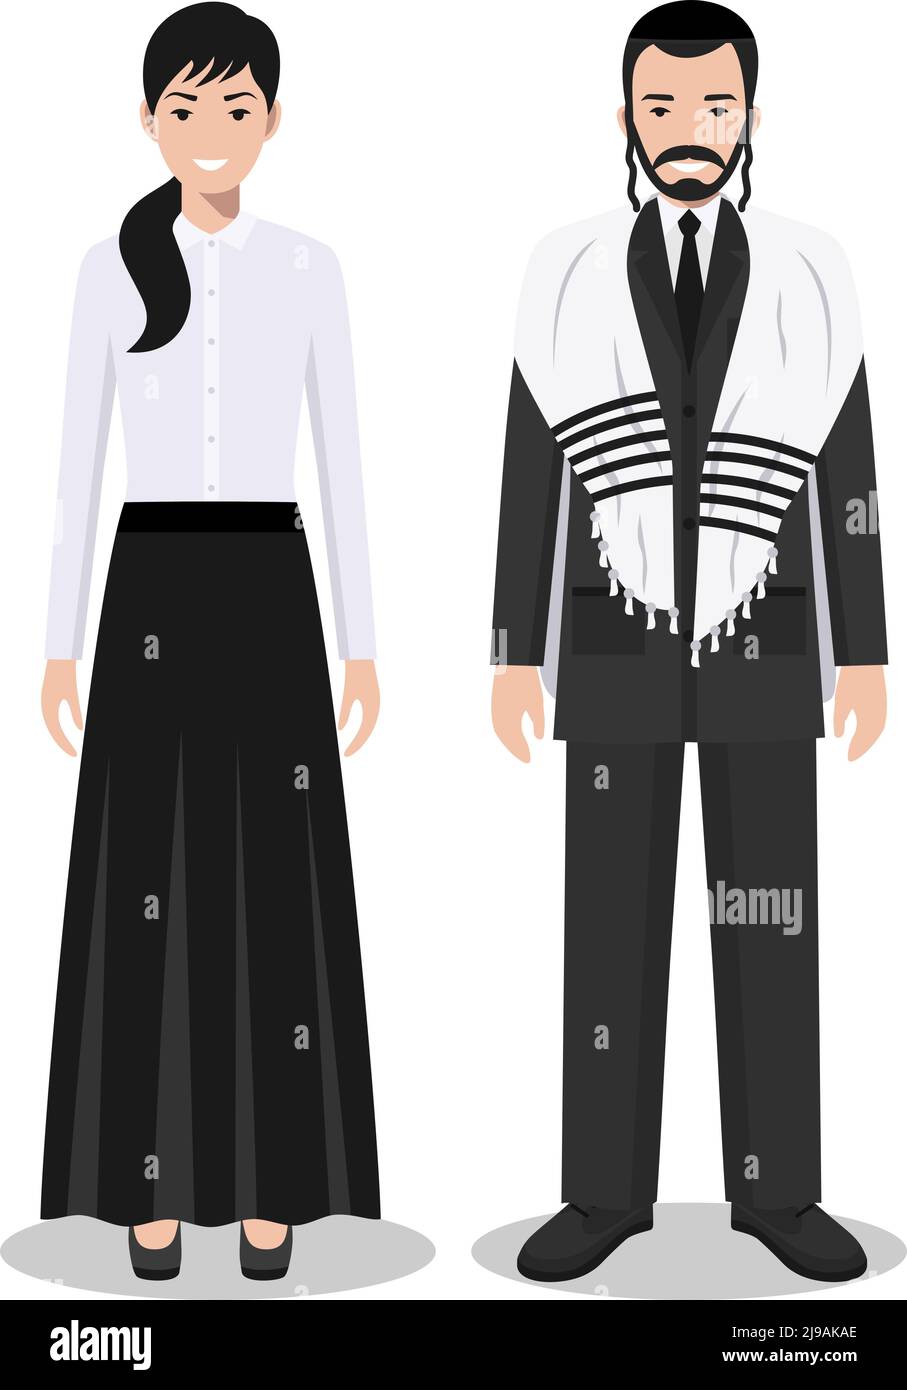 Detaillierte Darstellung von stehenden jüdischen Menschen in der traditionellen nationalen Kleidung isoliert auf weißem Hintergrund in flachem Stil. Stock Vektor